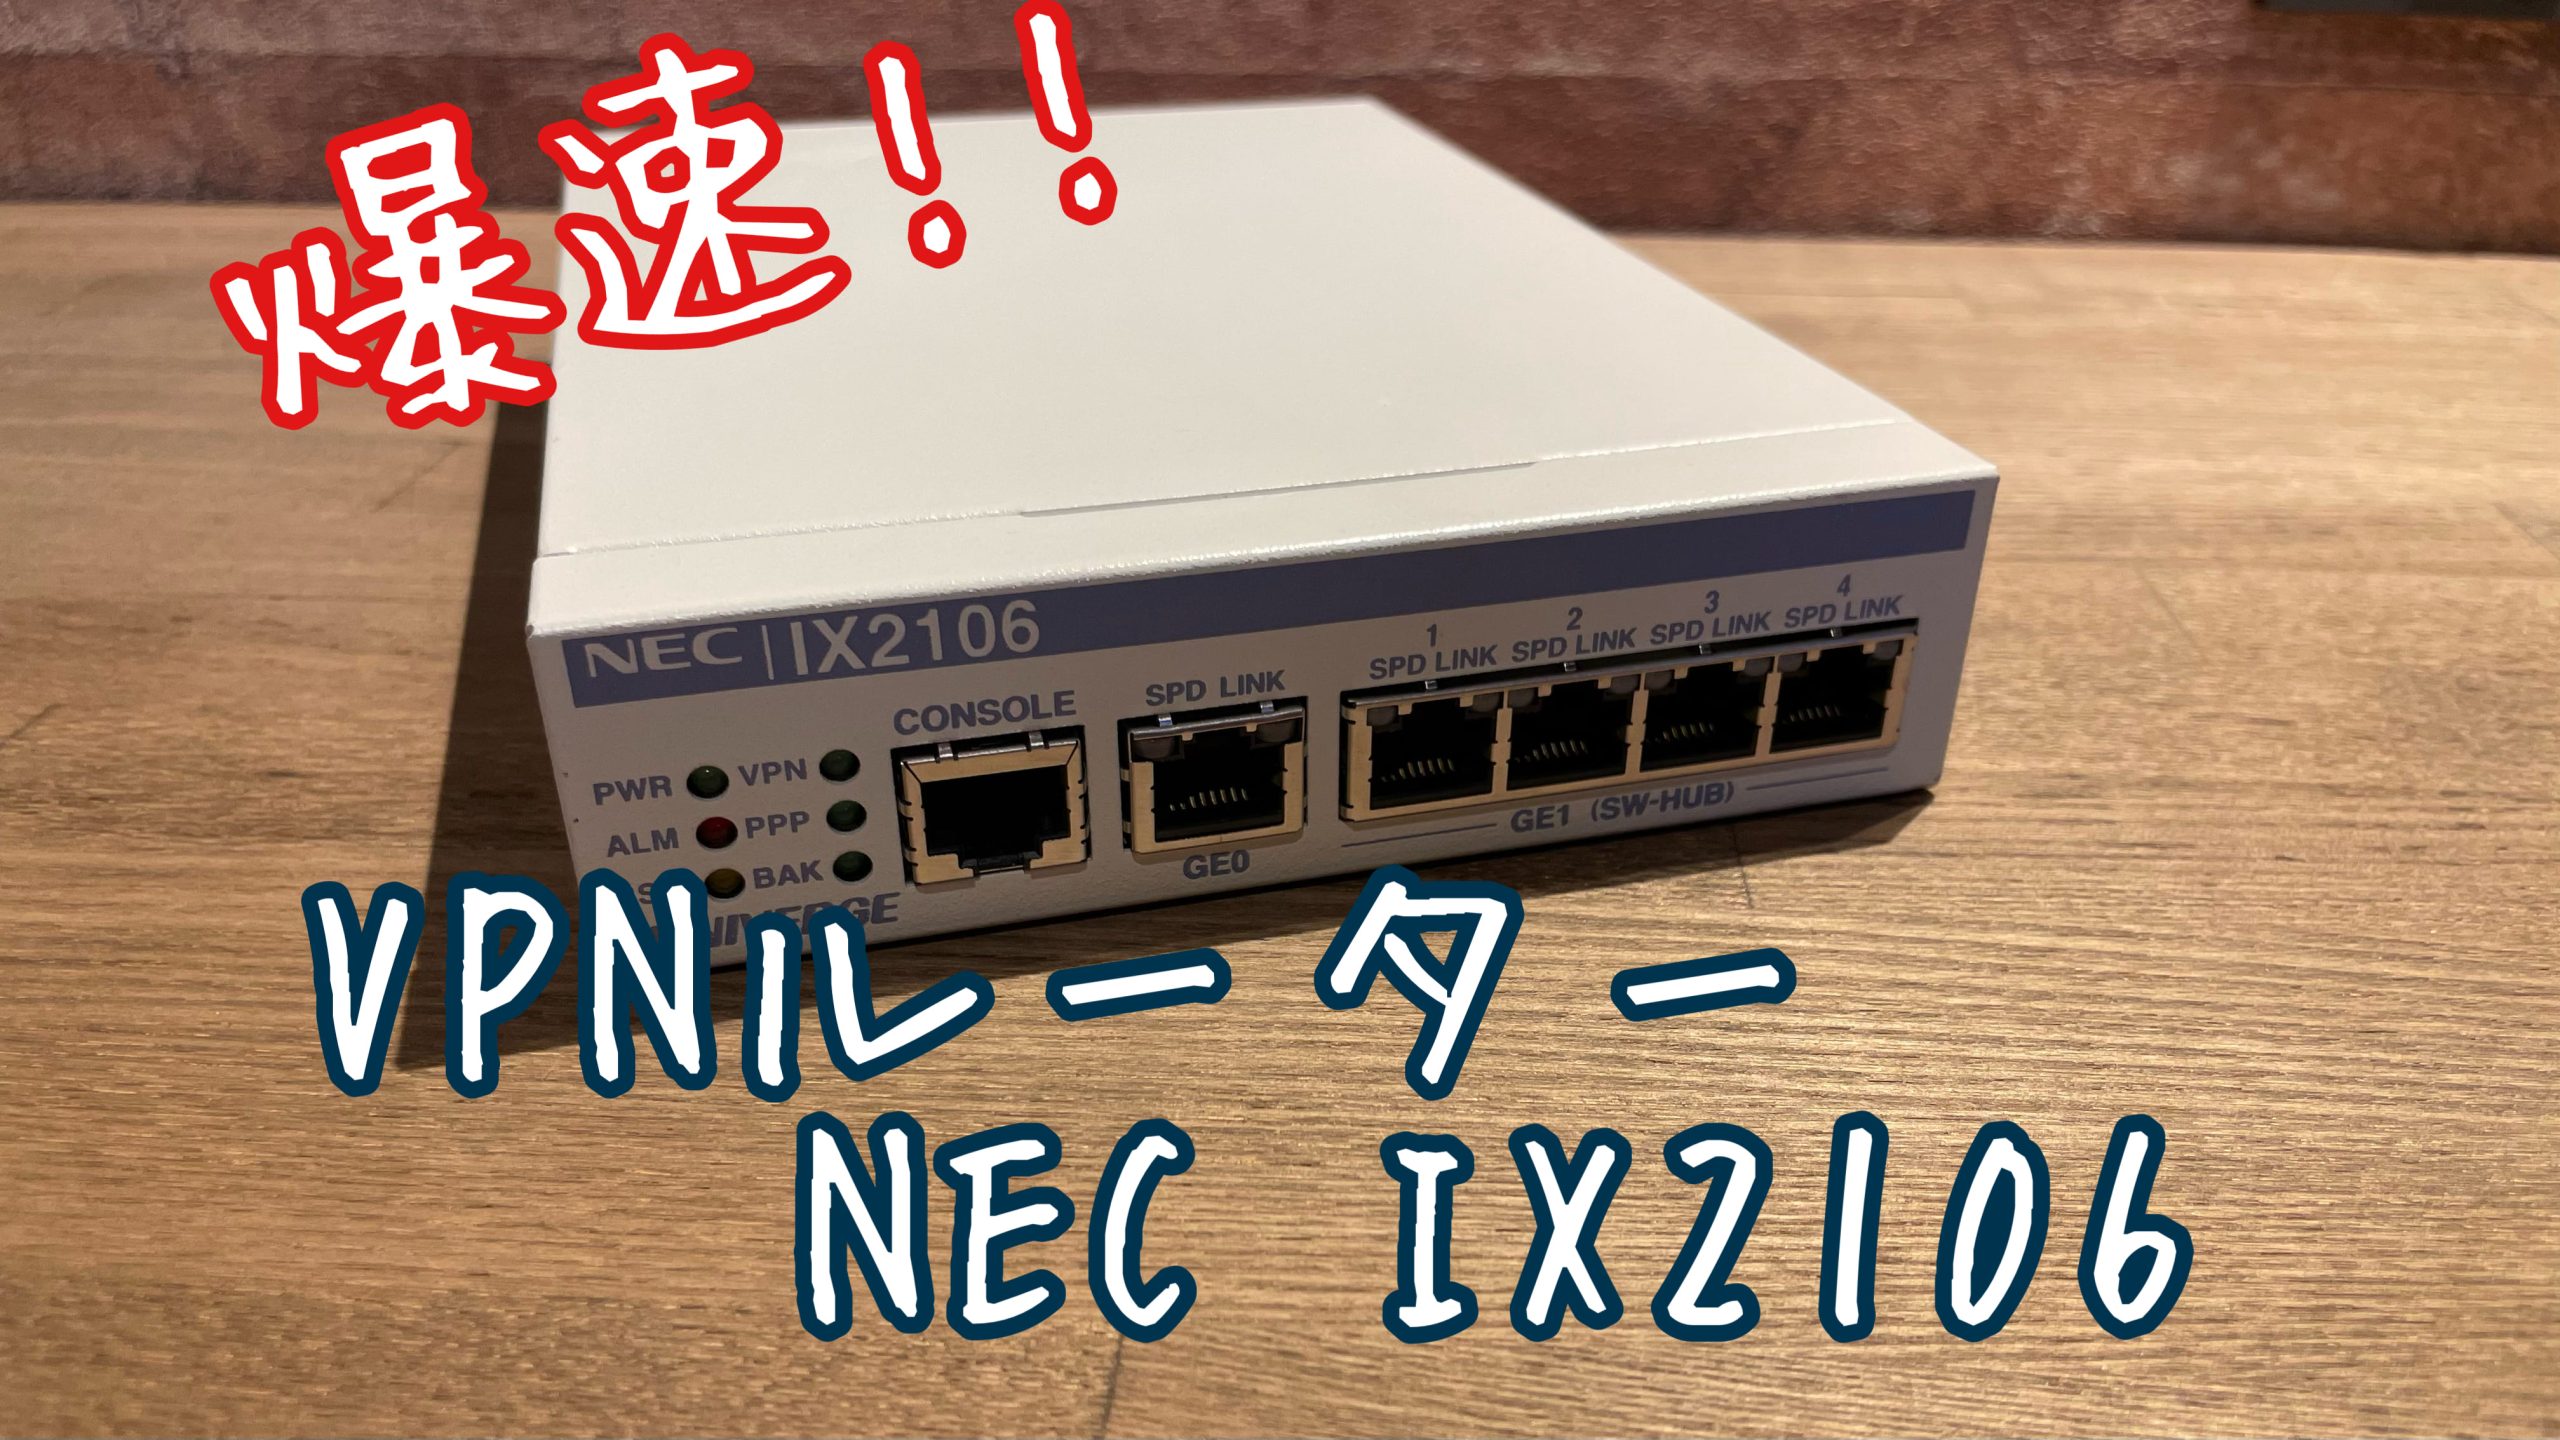 NEC ix2106 ルータ